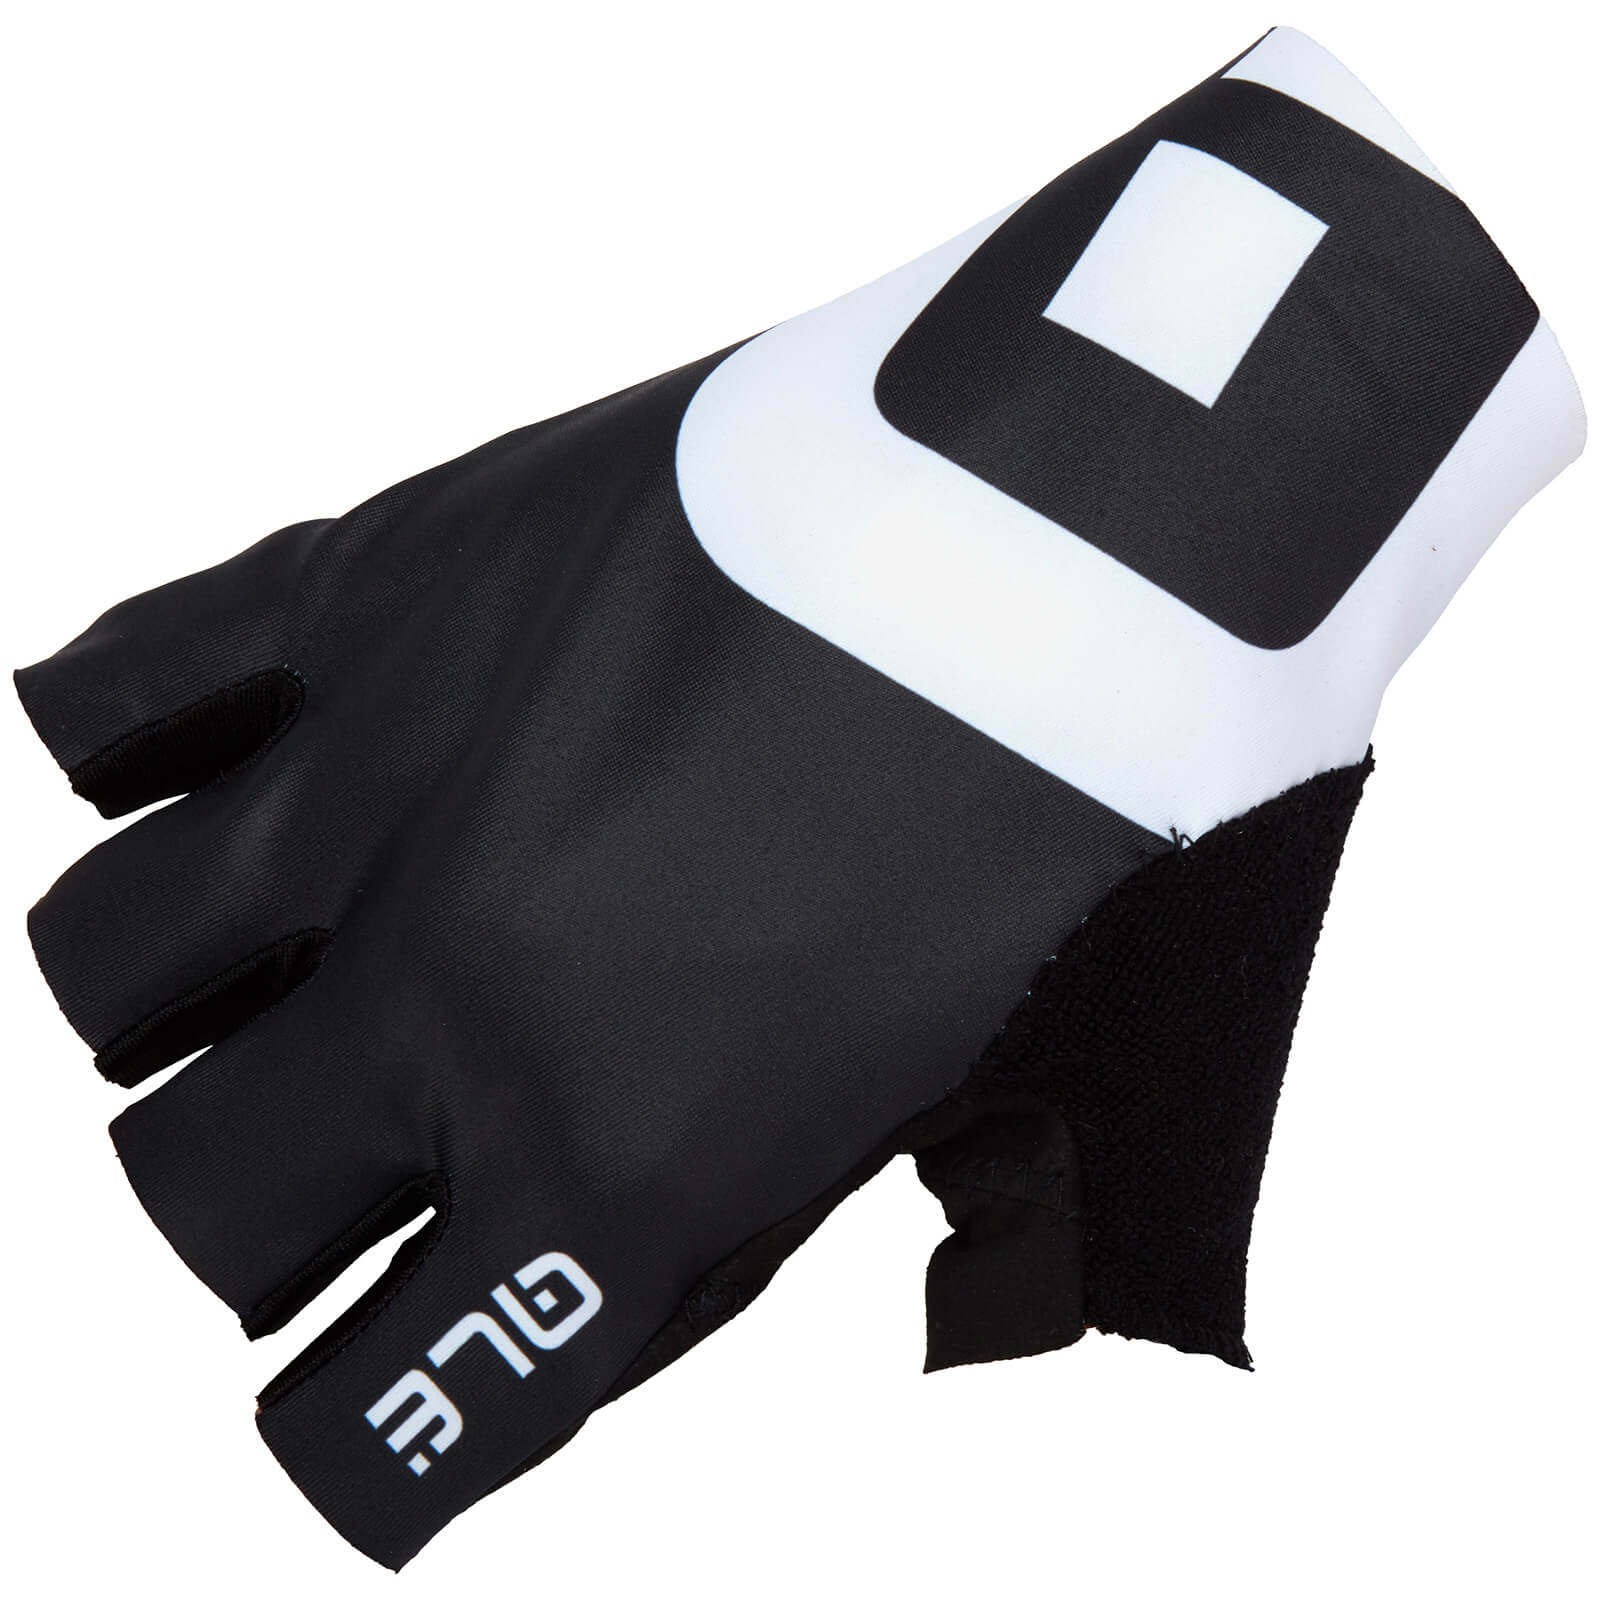 Alé Air Gloves - S - Black/White